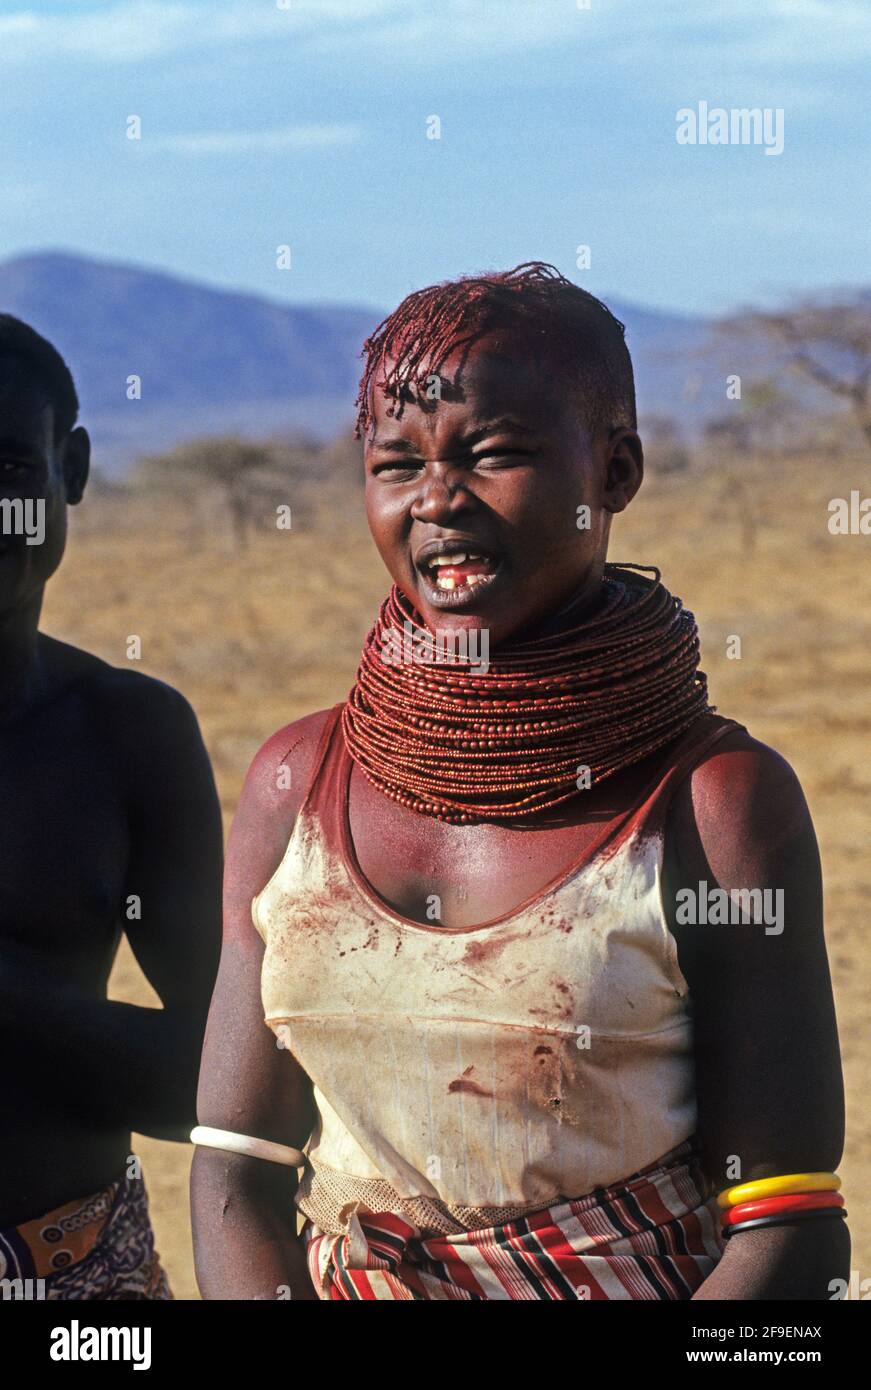 Turkana-Frau, Lake Turkana, Kenia die Turkana sind ein nilotisches Volk, das im Turkana County im Nordwesten Kenias, einer halbinarden Klimaregion, beheimatet ist Stockfoto